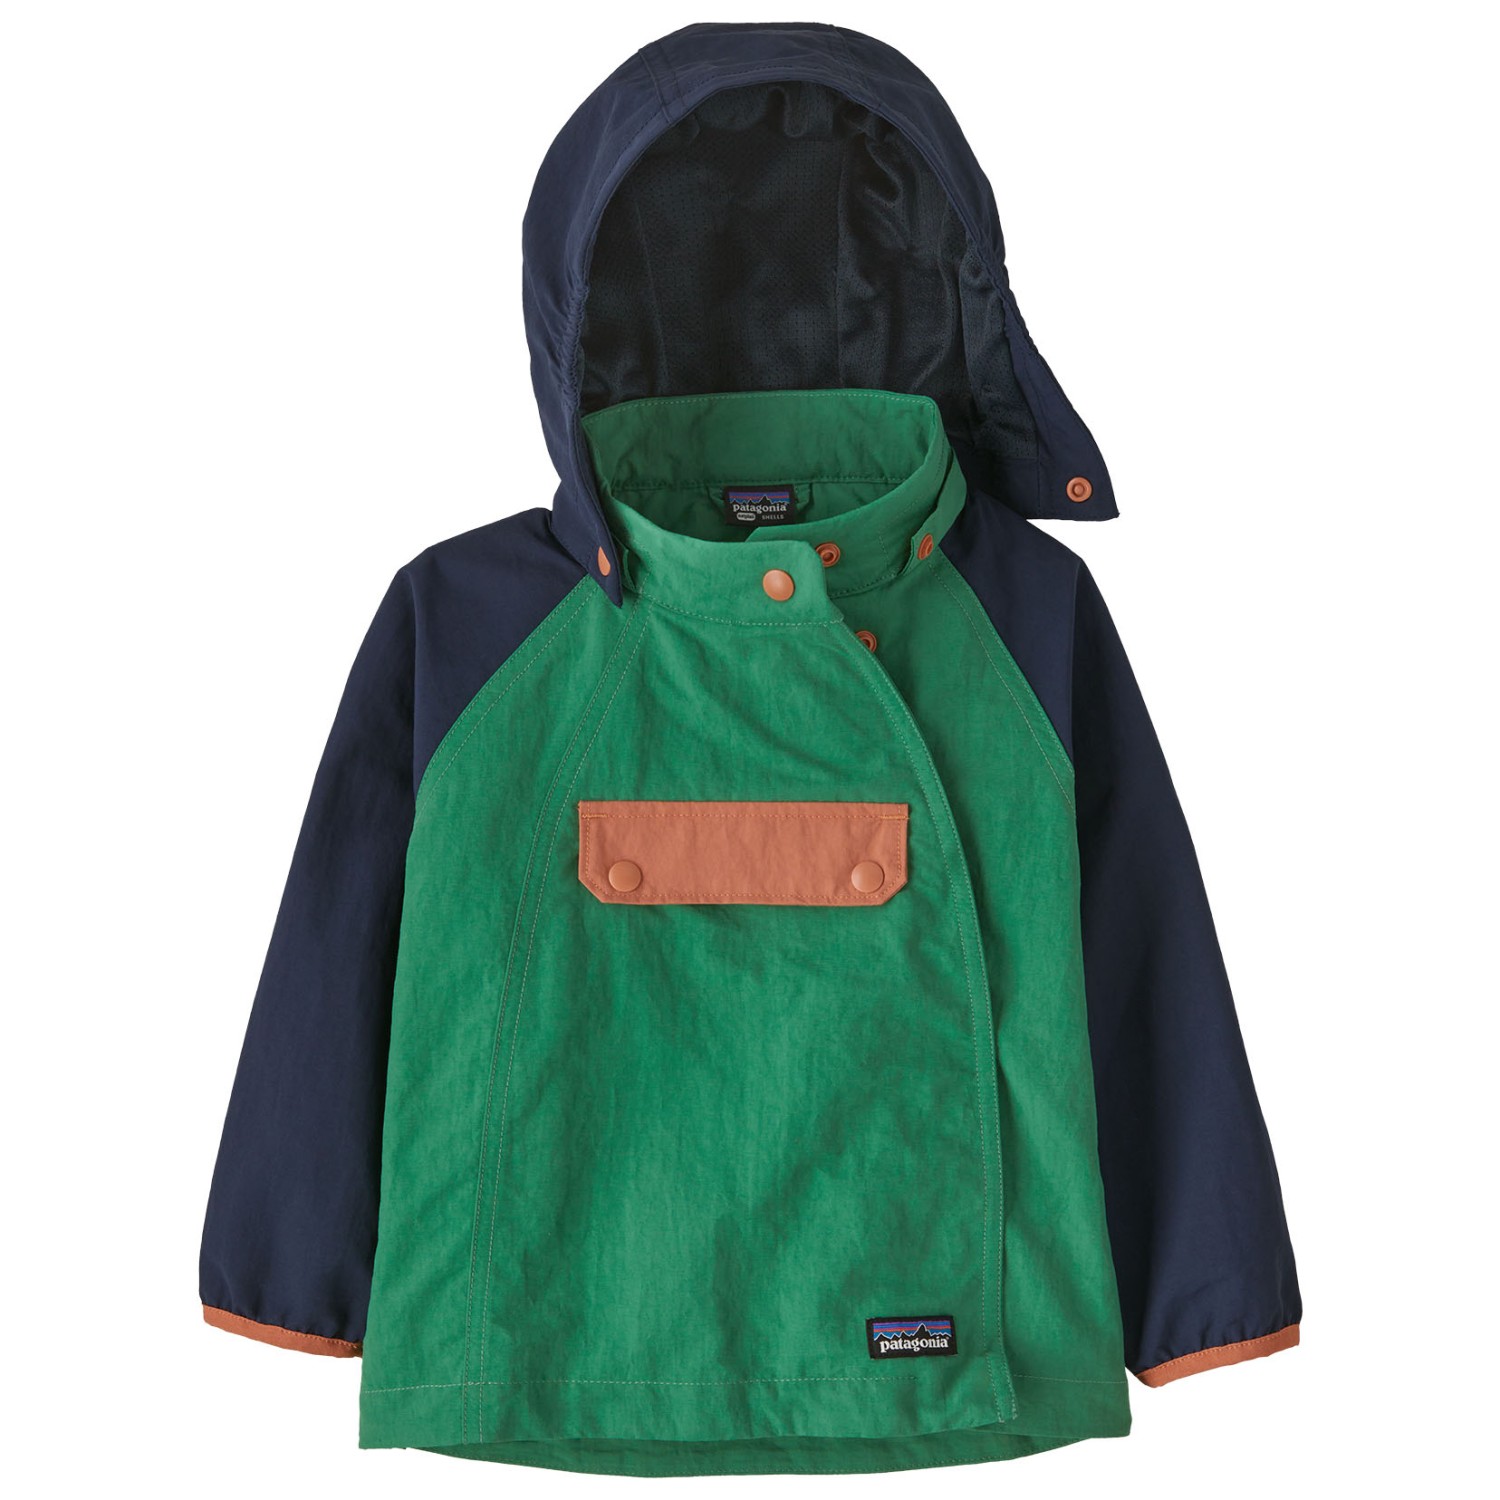 Повседневная куртка Patagonia Kid's Isthmus Anorak, цвет Gather Green куртка hardshell isthmus anorak patagonia цвет subtidal blue